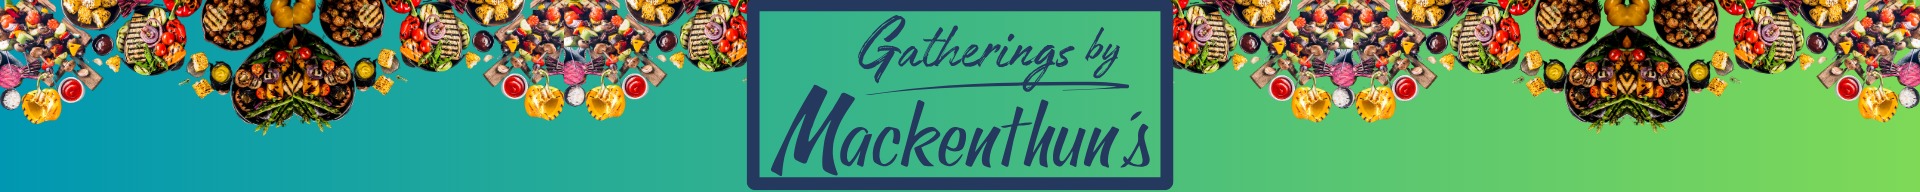 Gatherings by Mackenthun's